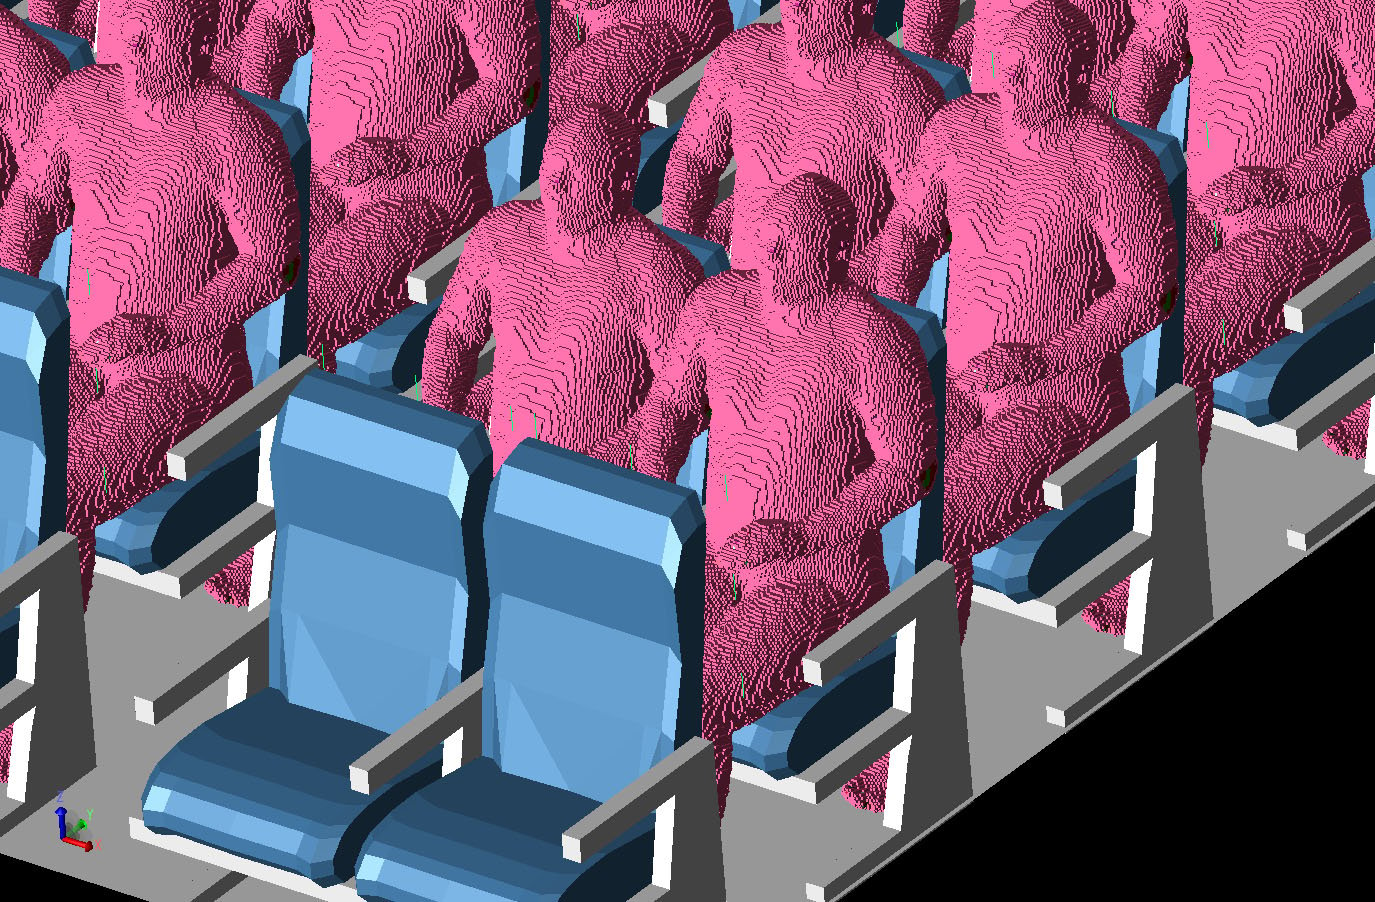 Abbildung 4Dreidimensionale Ansicht der Flugzeugkabine mit einigen der positionierten VariPose-Männer auf den Sitzen. Alle Sitze im Flugzeug, außer der ersten und letzten Reihe, sind mit den Männern besetzt.